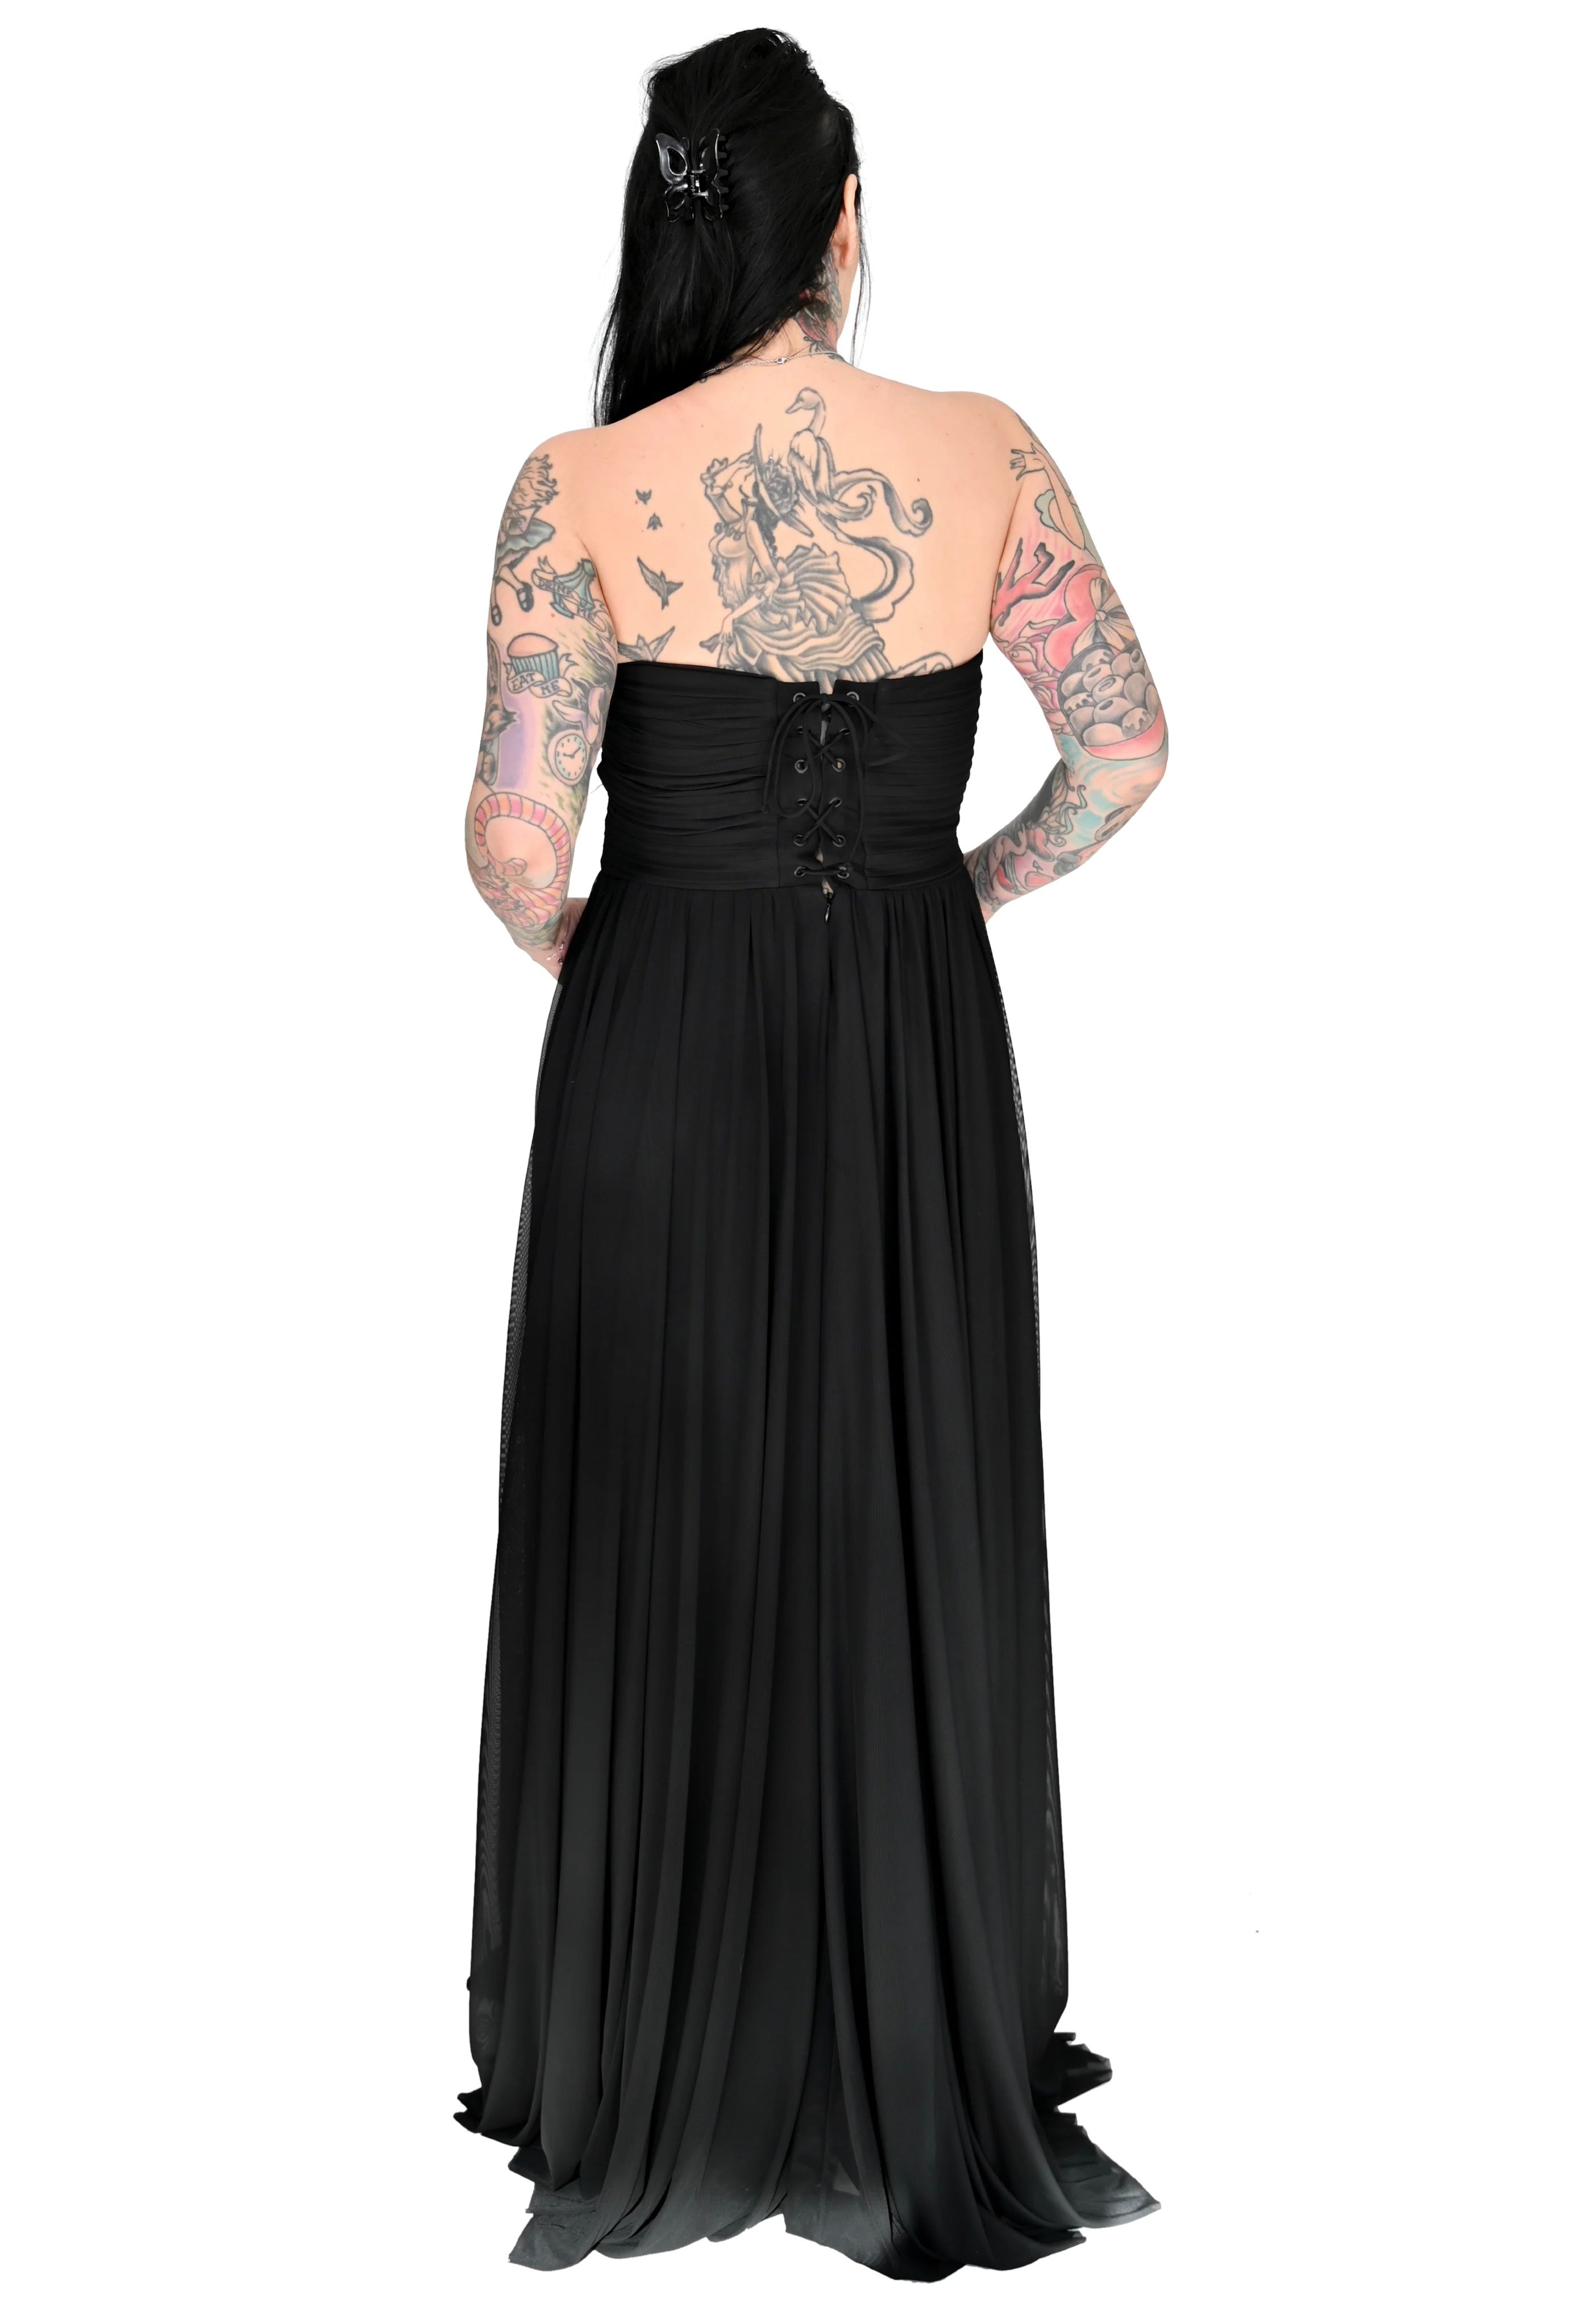 Foxblood - Hestia Gown Black - Dress